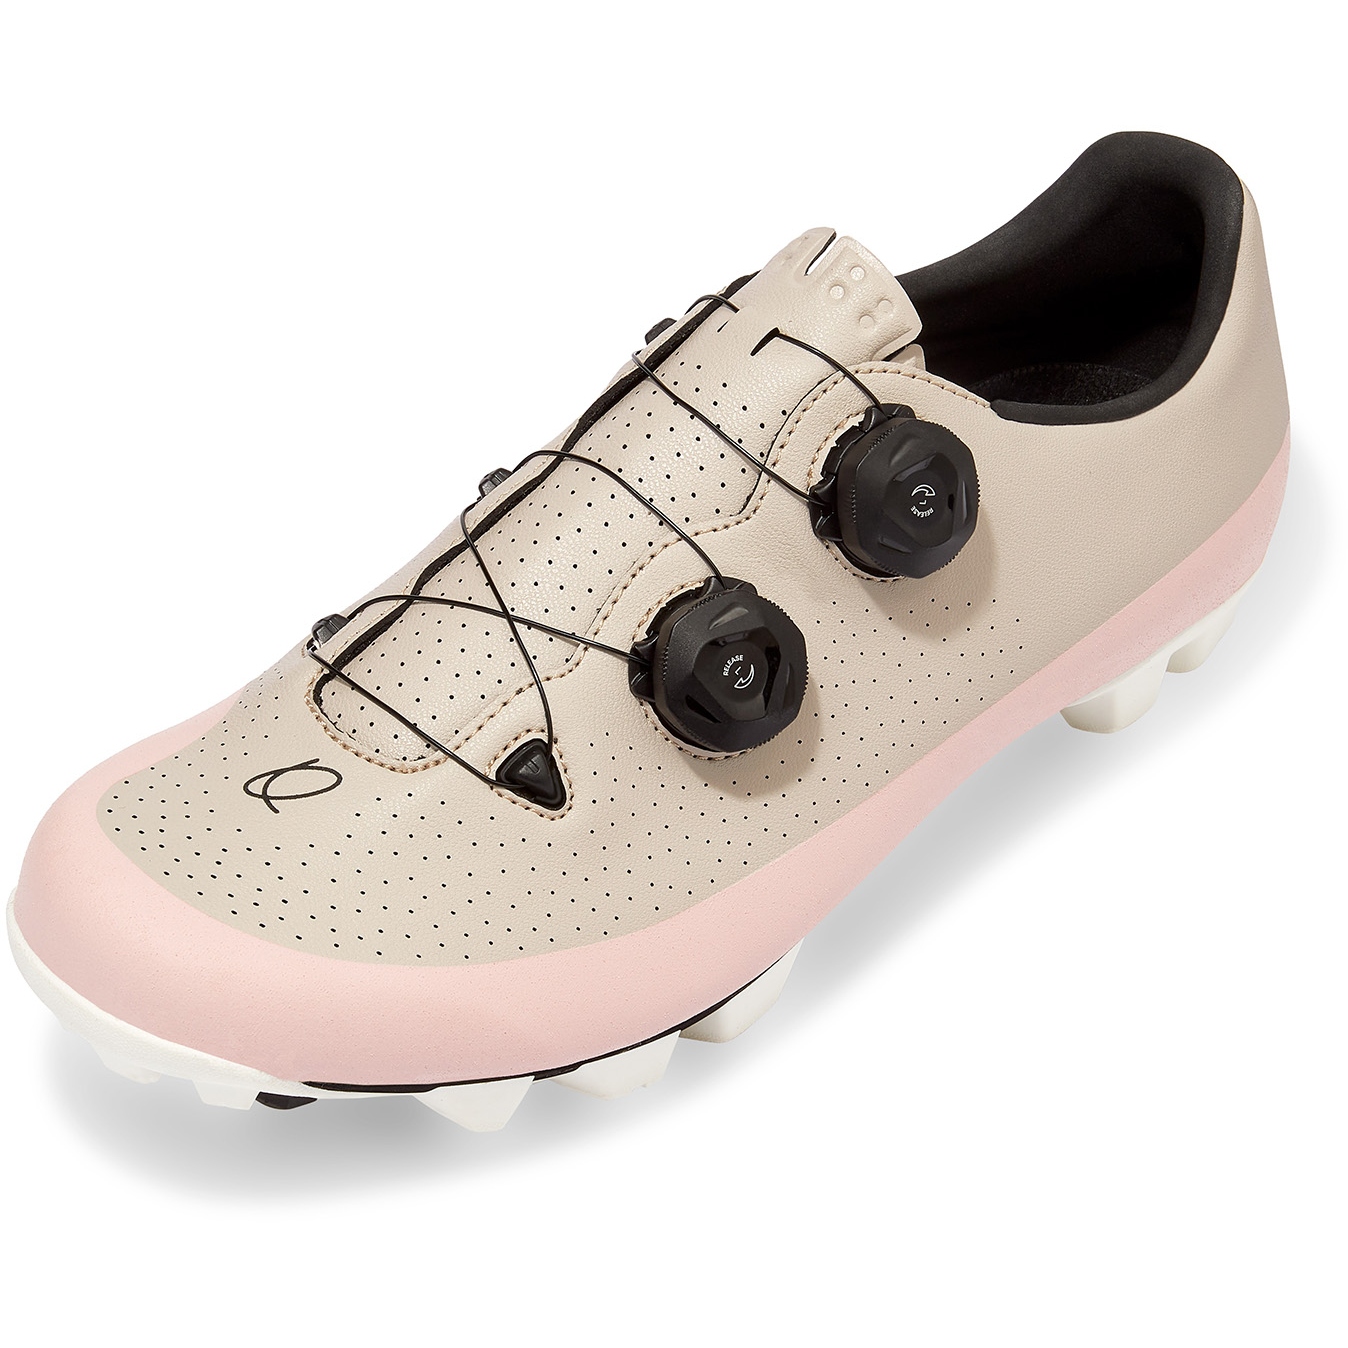 Productfoto van QUOC Gran Tourer XC Fietsschoenen - dusty pink